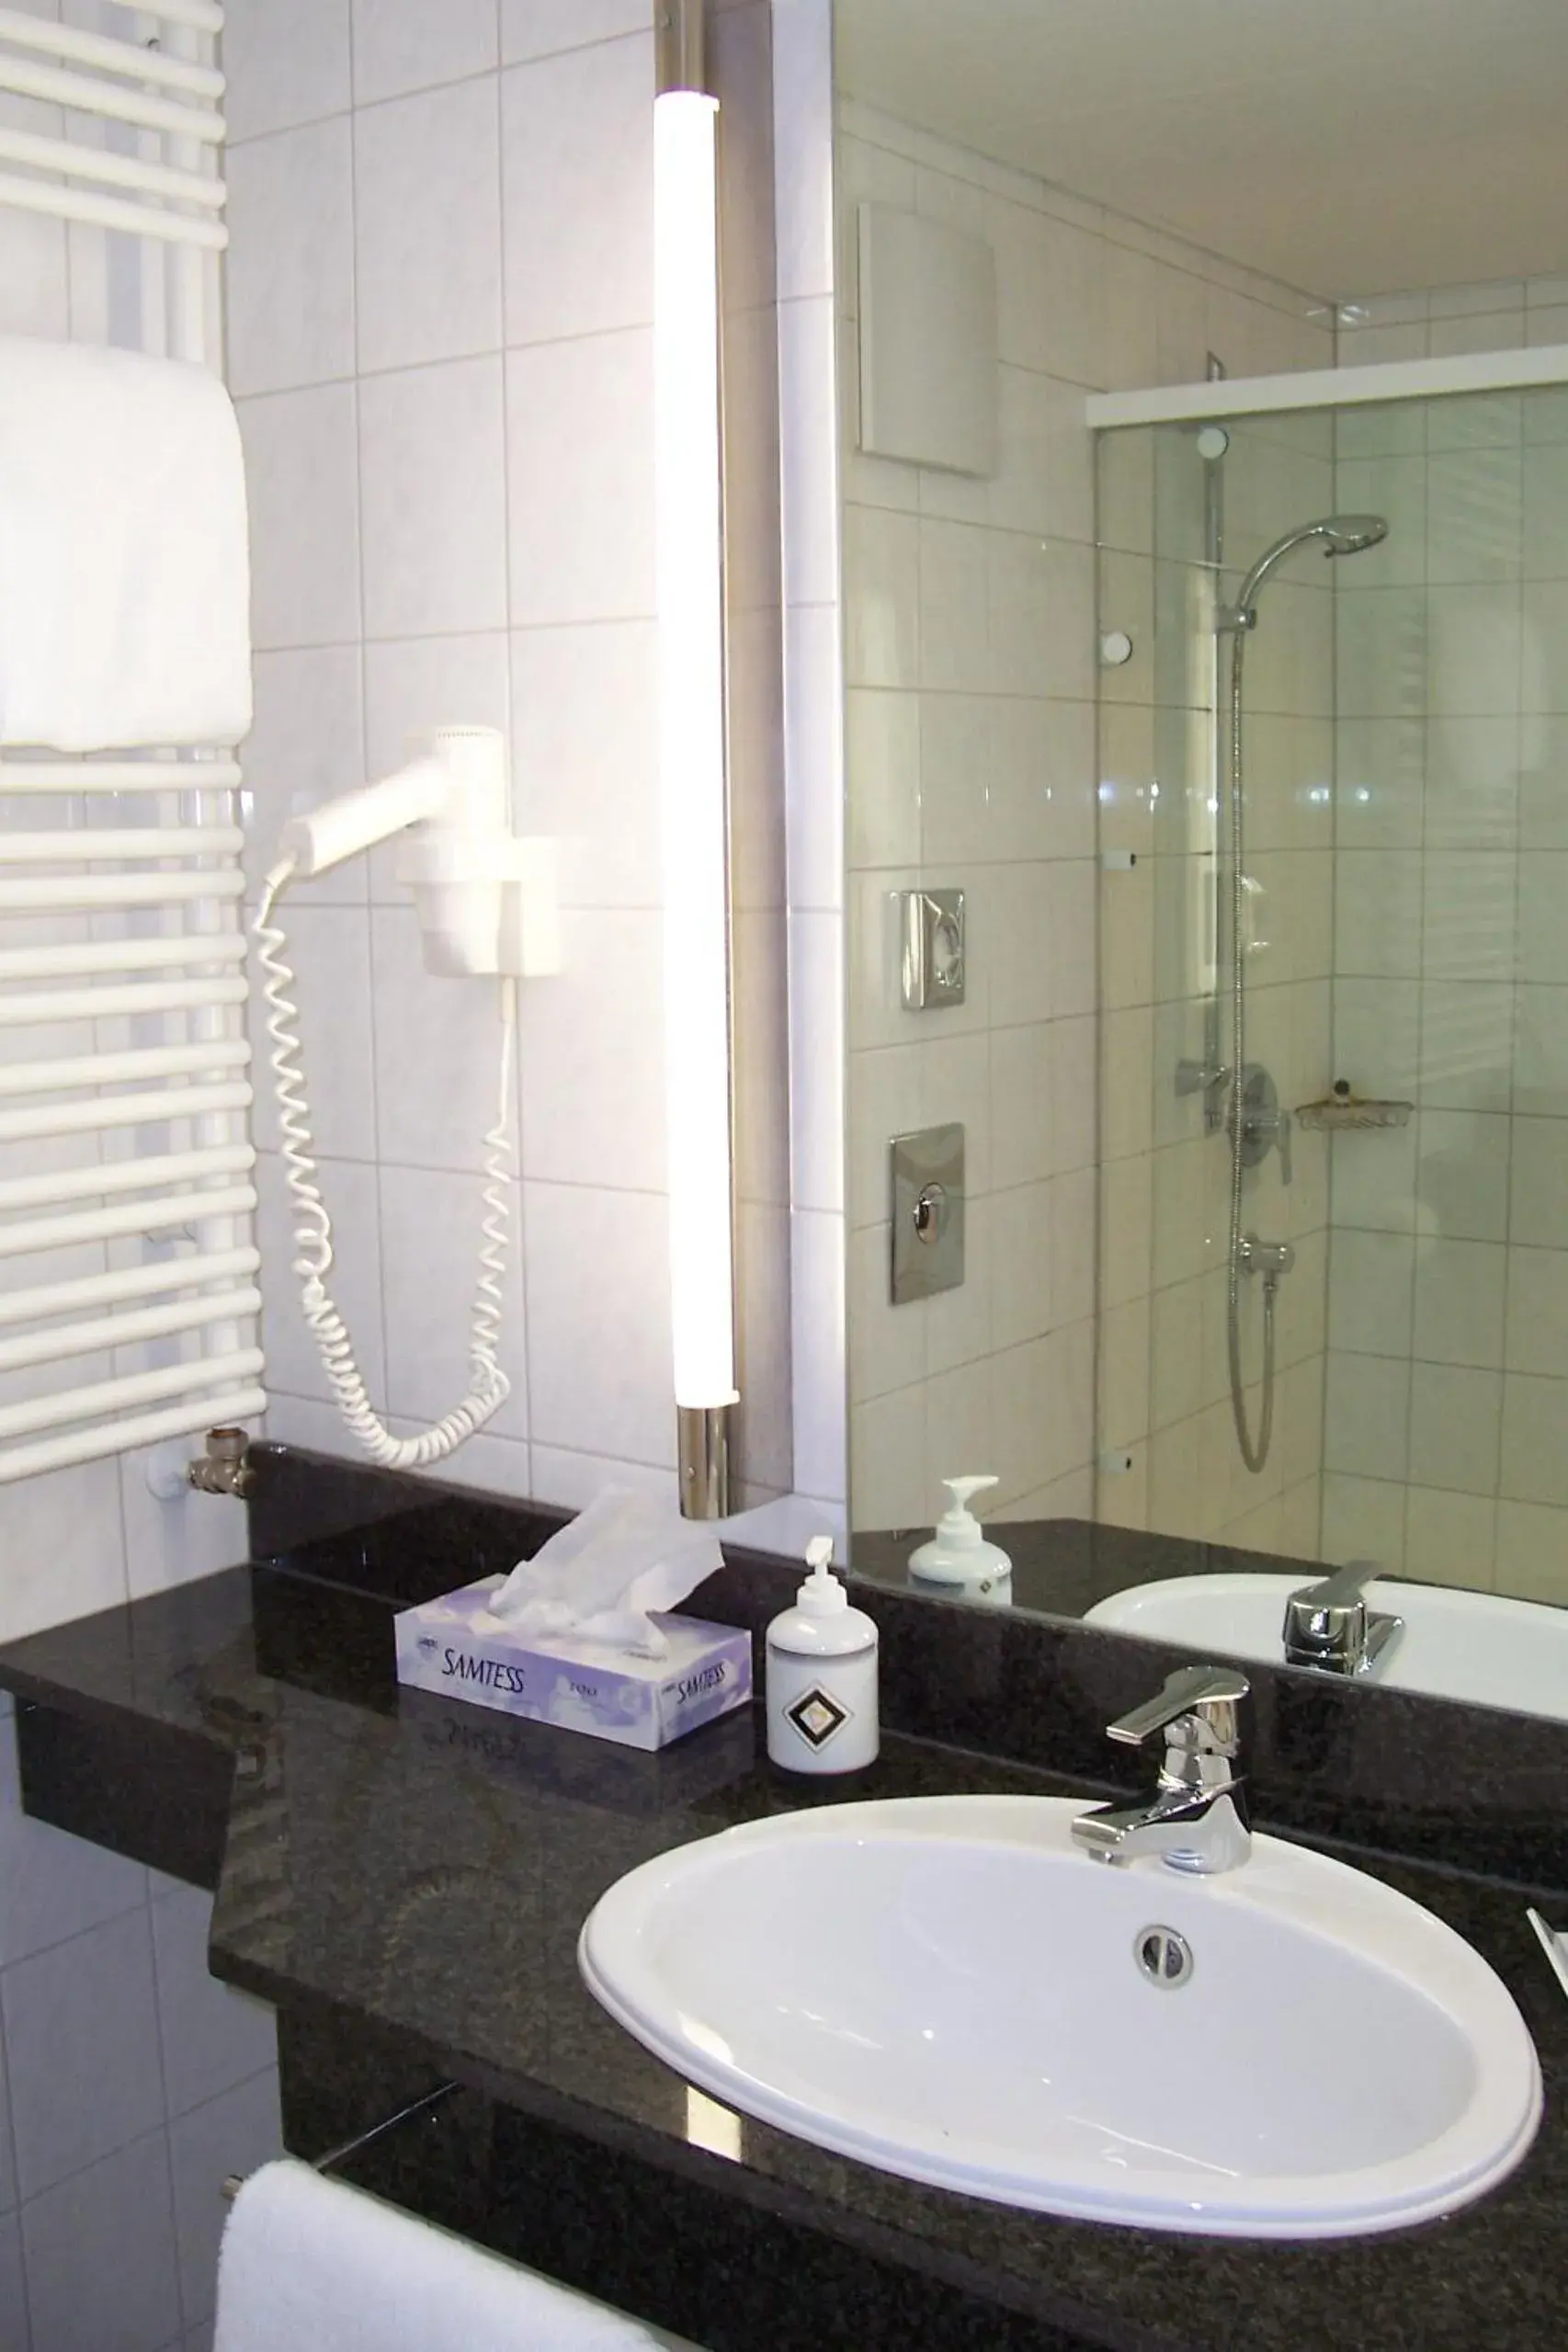 Bathroom in Hotel Theresientor